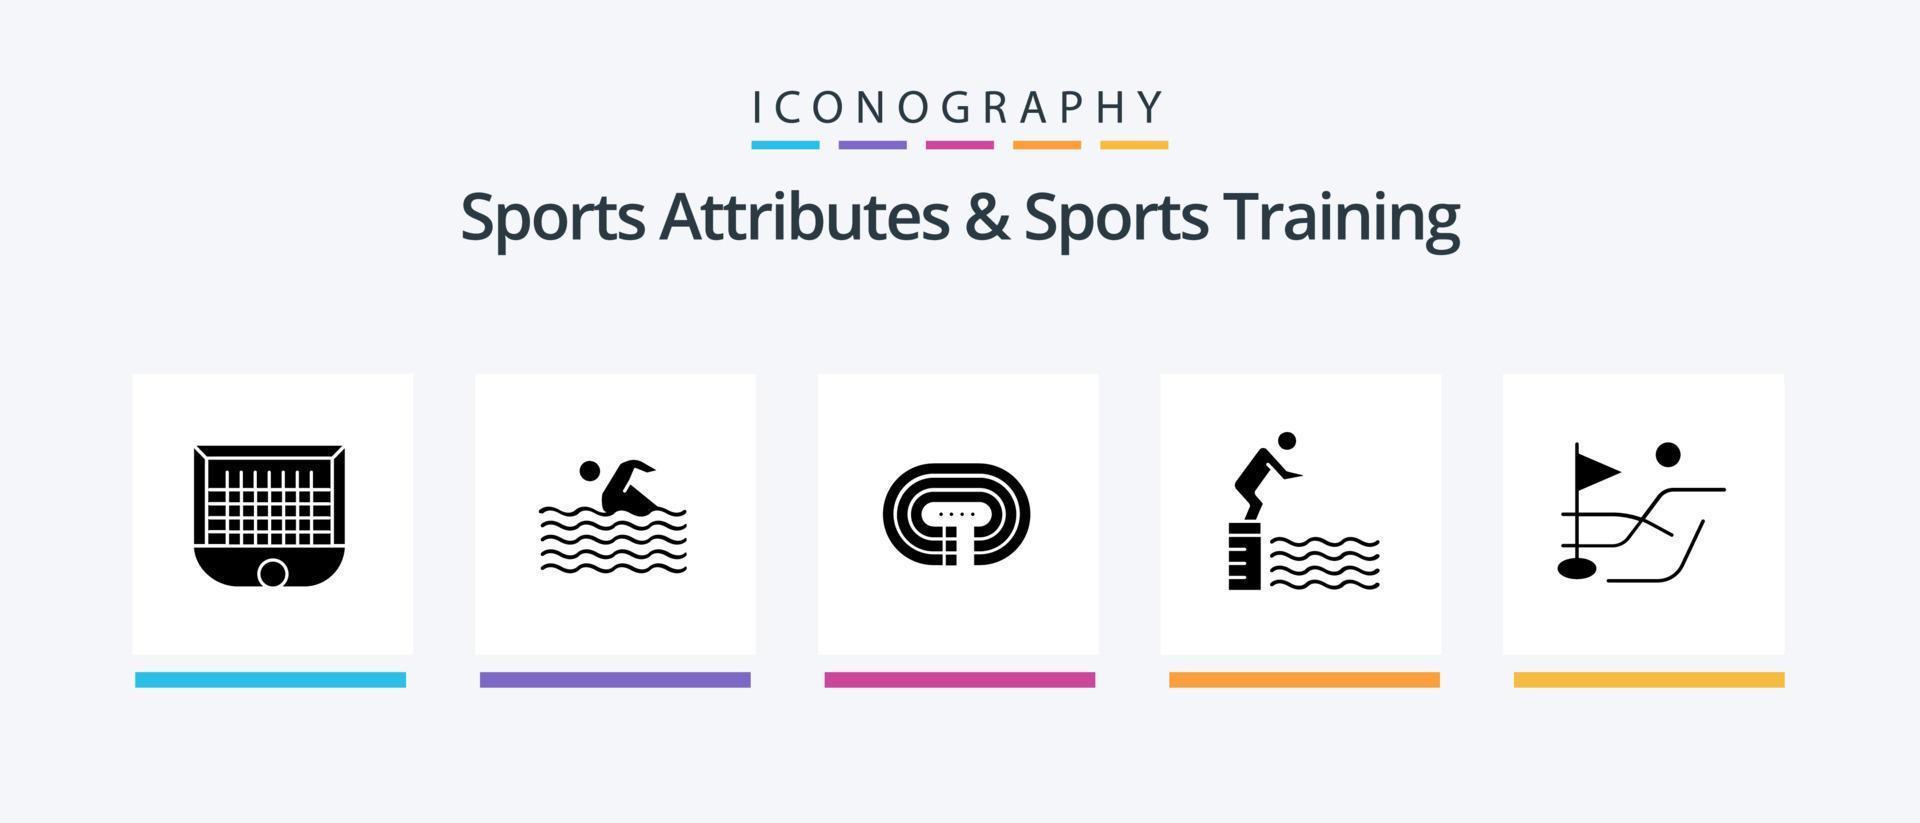 atributos esportivos e pacote de ícones de glyph 5 de treinamento esportivo, incluindo piscina. pular. natação. mergulhando. superfície. design de ícones criativos vetor